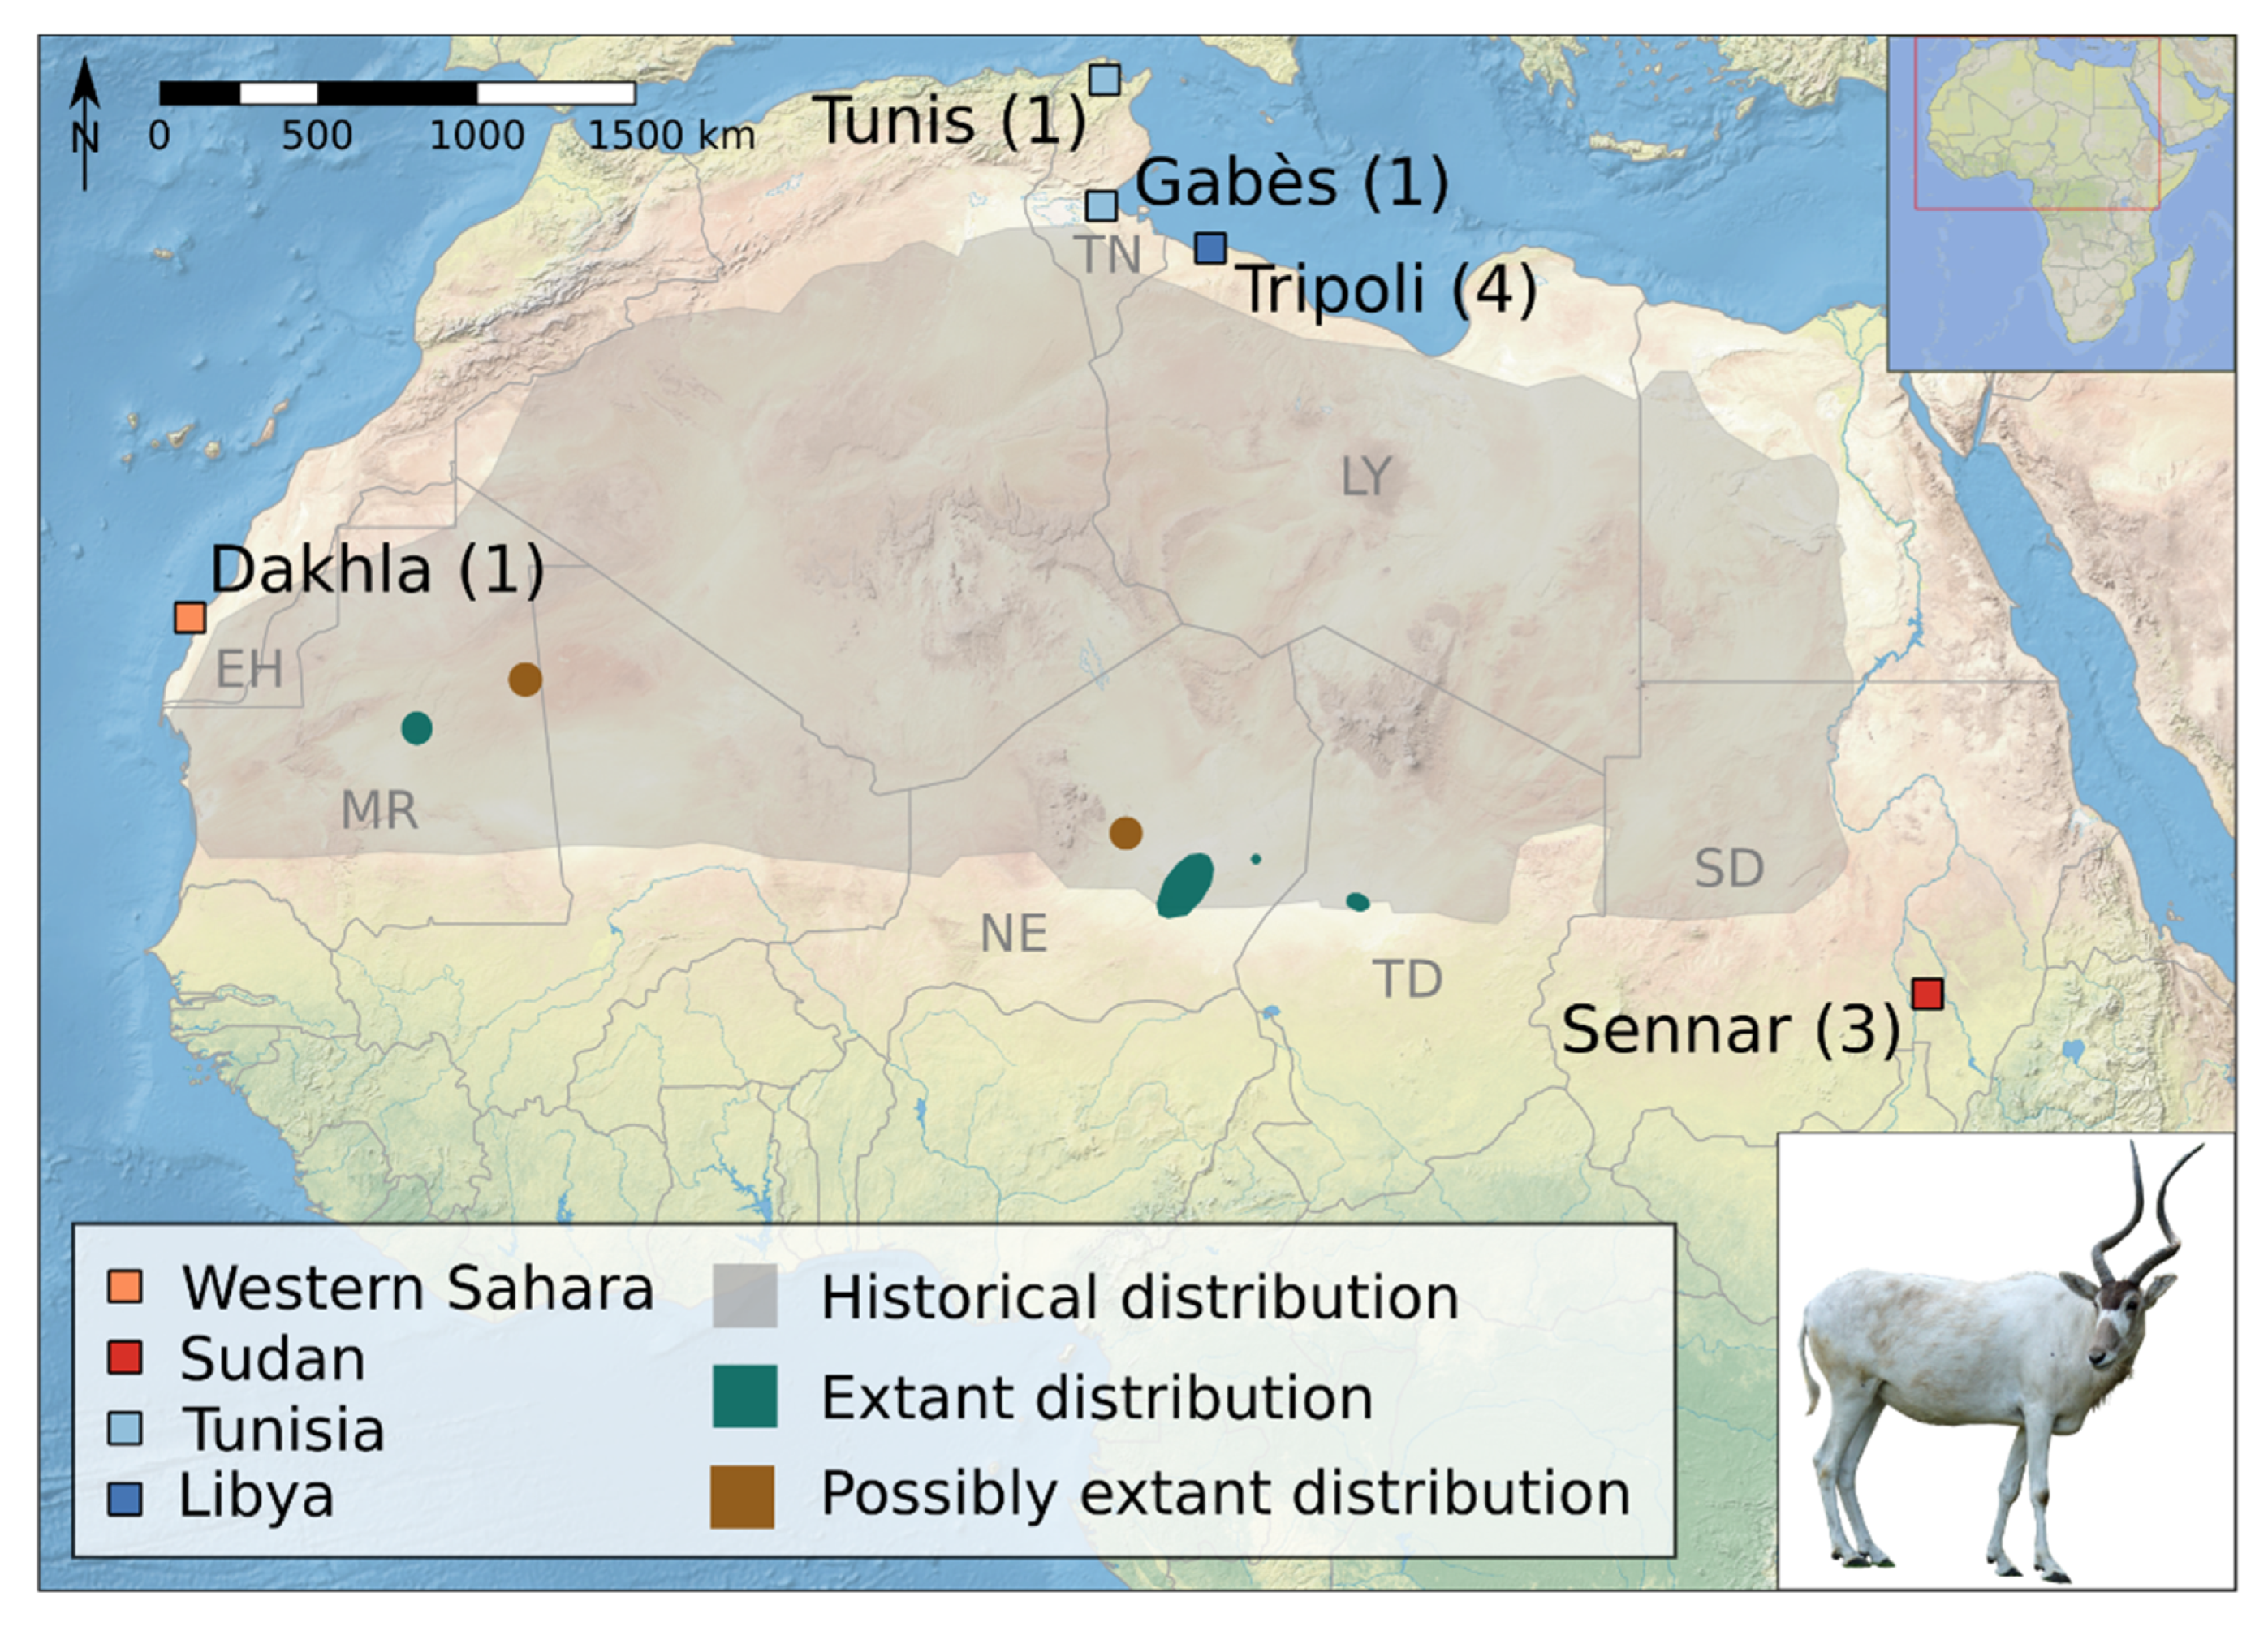 Read Sandscript #31! - Sahara Conservation